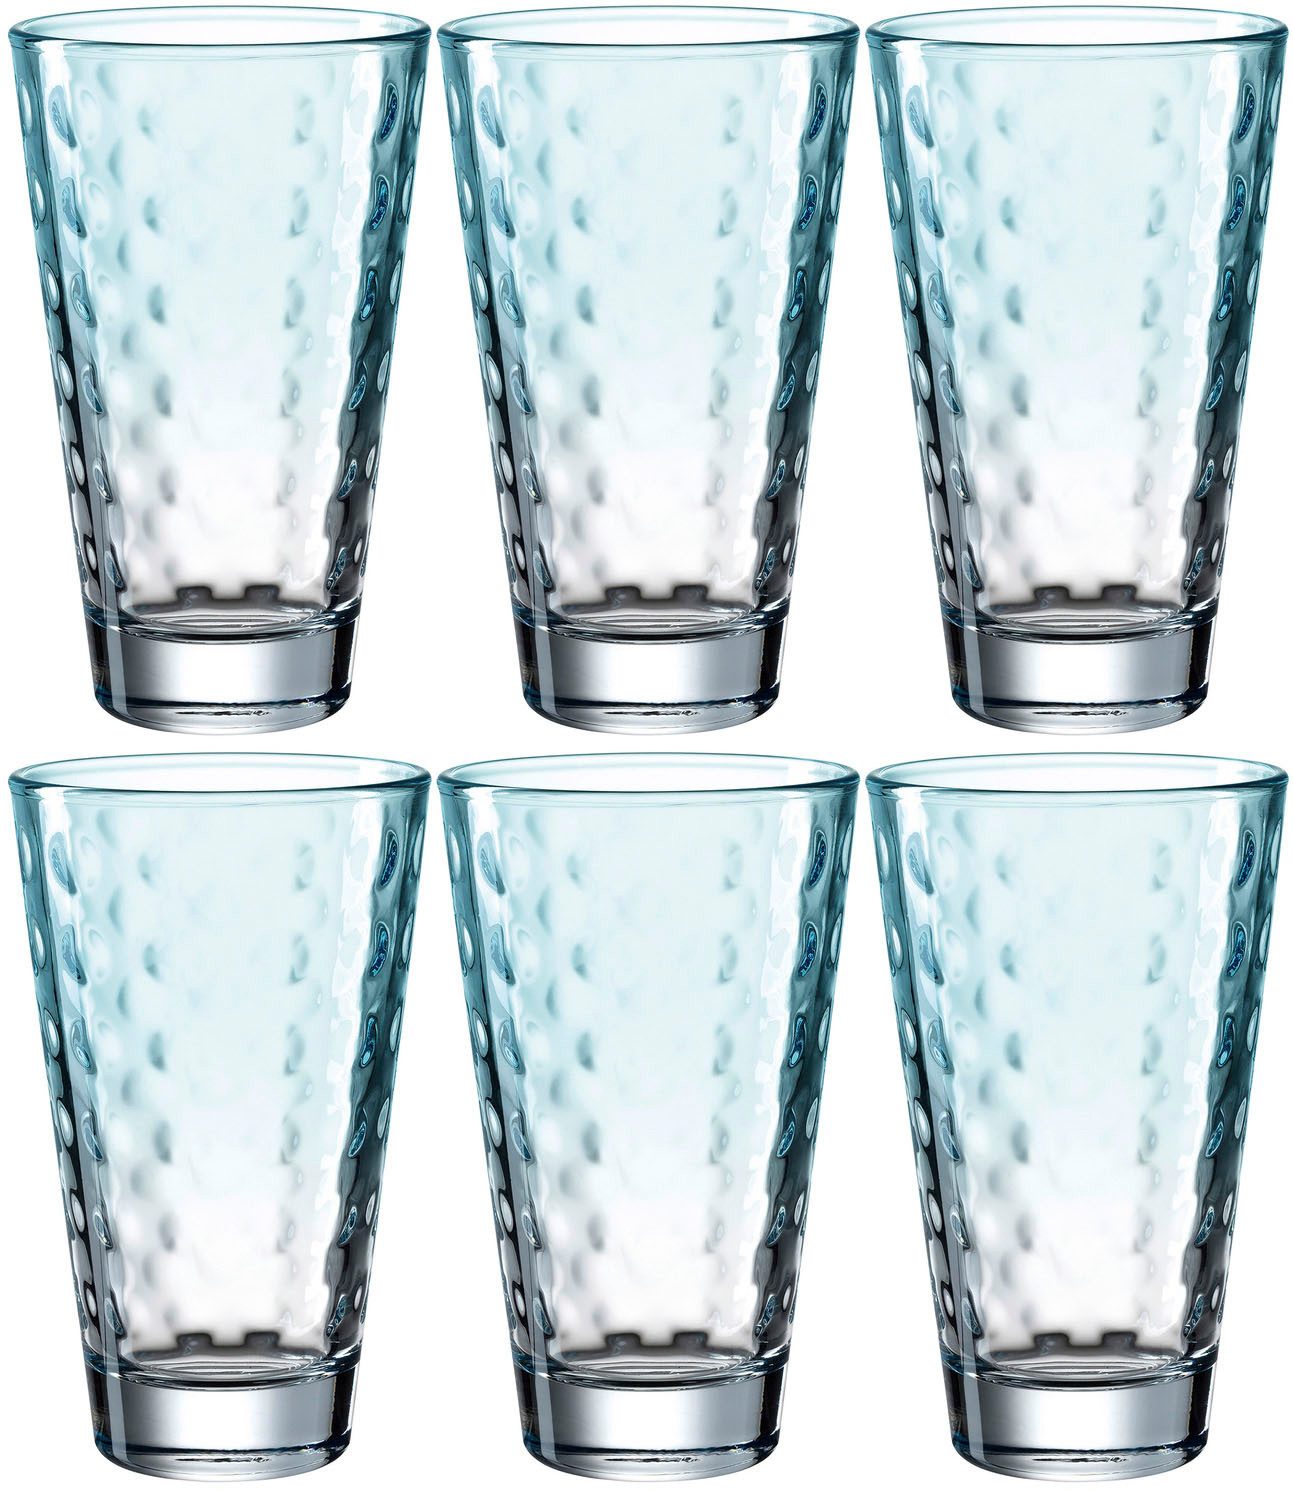 LEONARDO Longdrinkglas OPTIC, Glas, 300 ml, 6-teilig